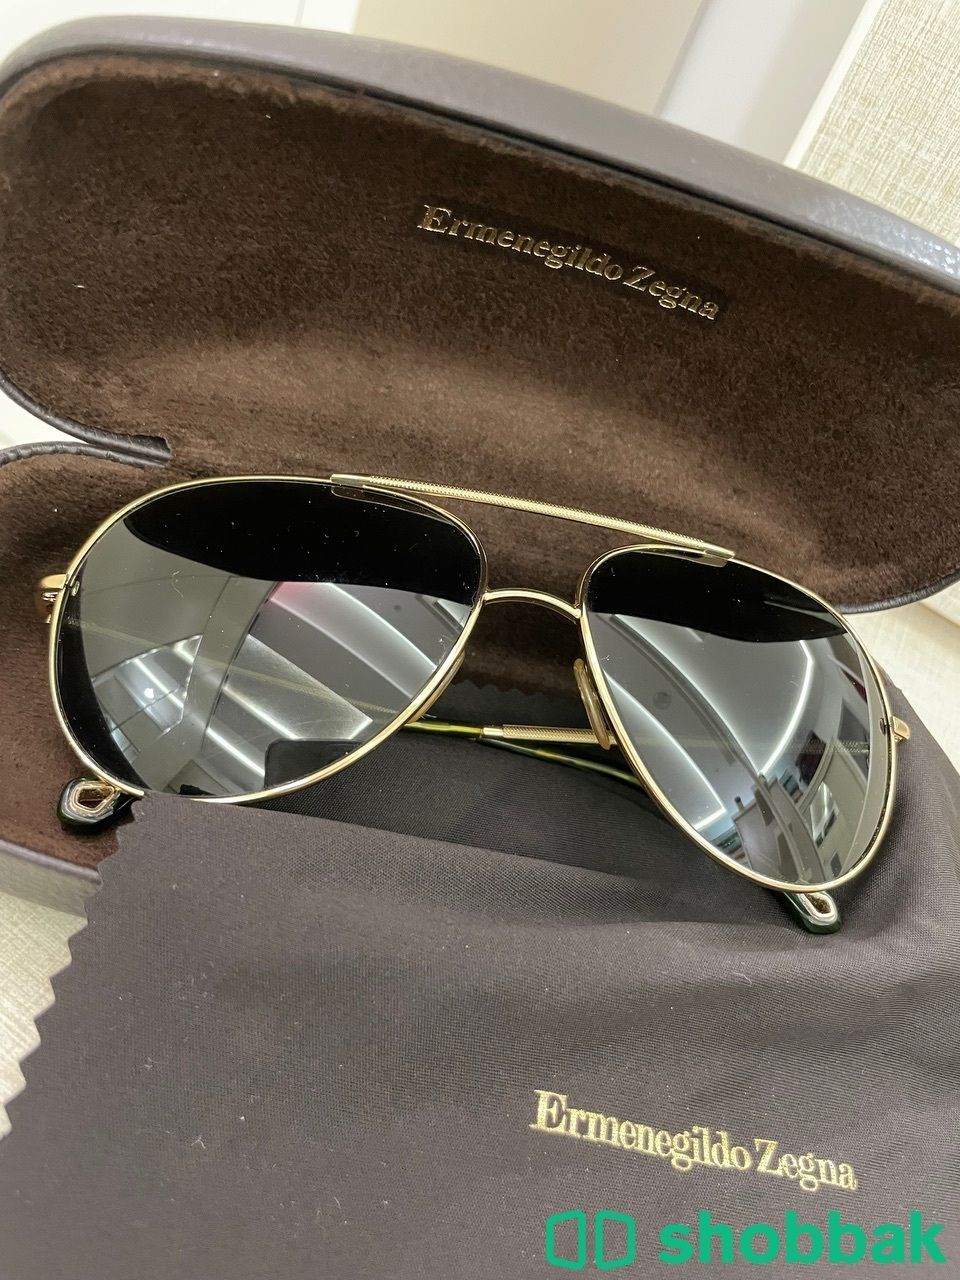 نظارة شمسيه ماركة زيغنا Shobbak Saudi Arabia